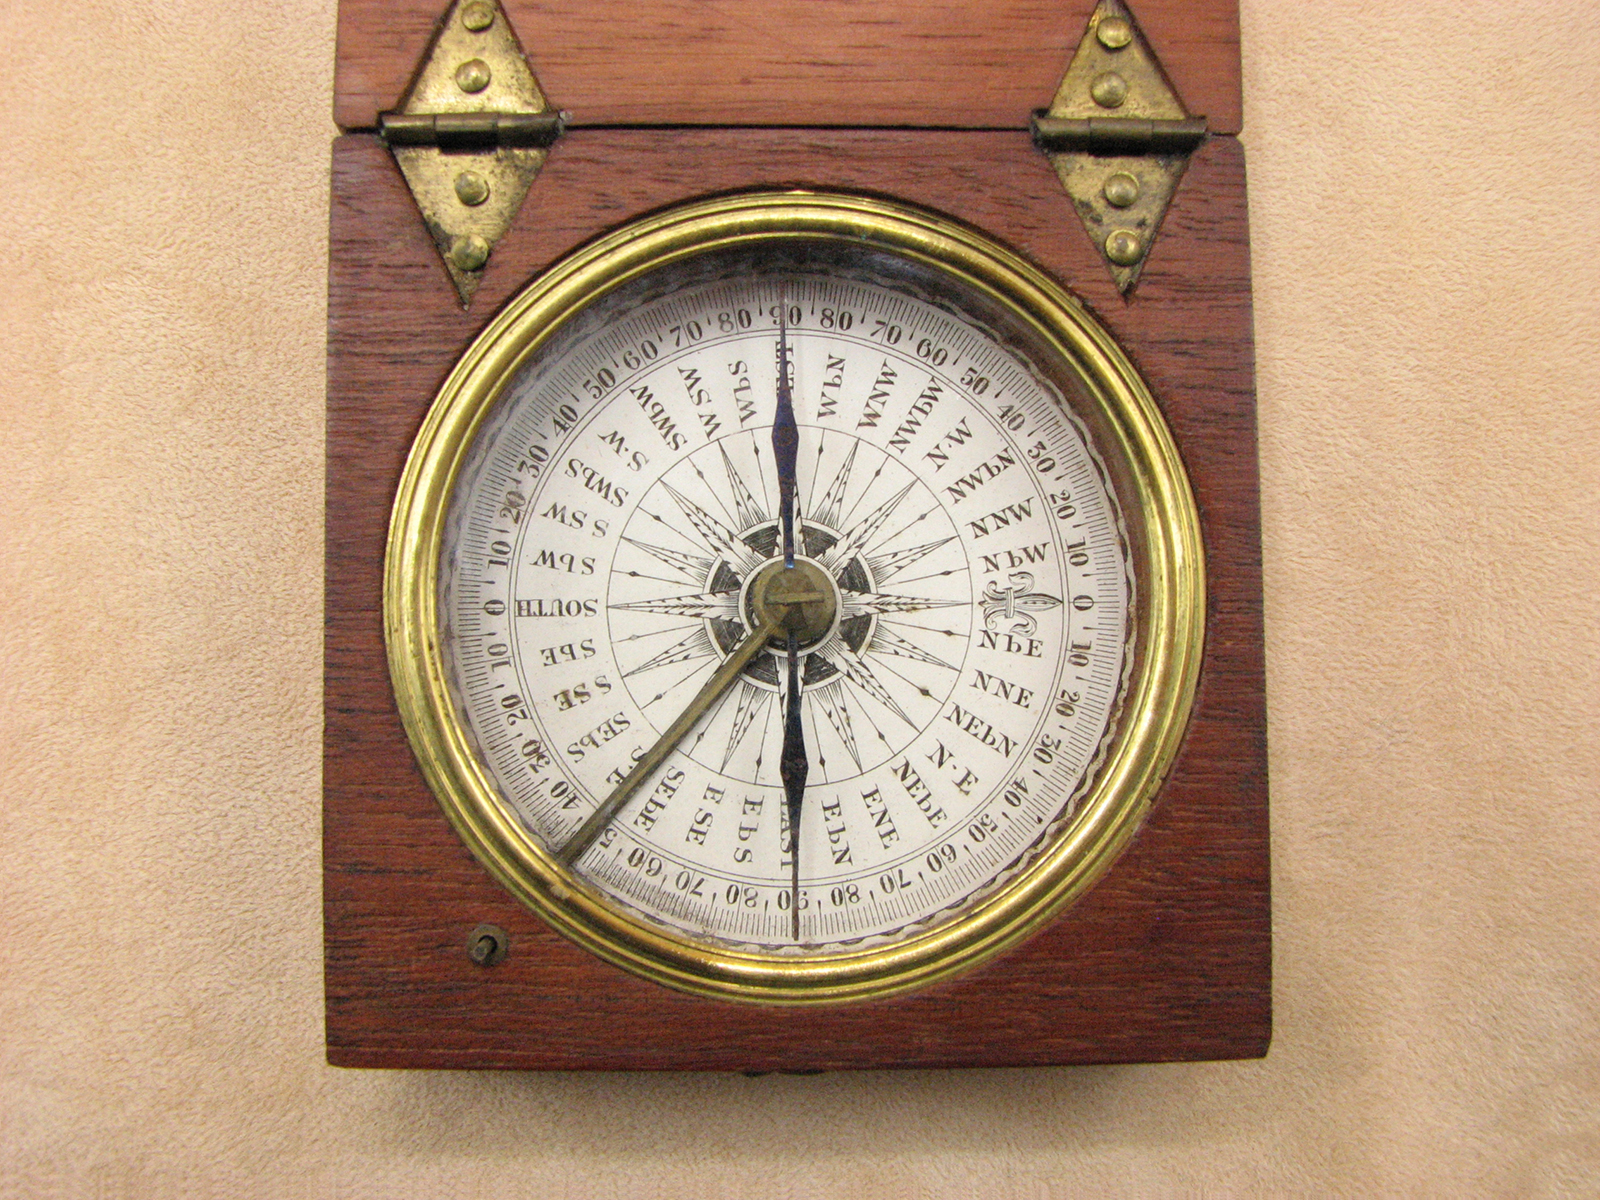 19th century Georgian mahogany cased pocket compass